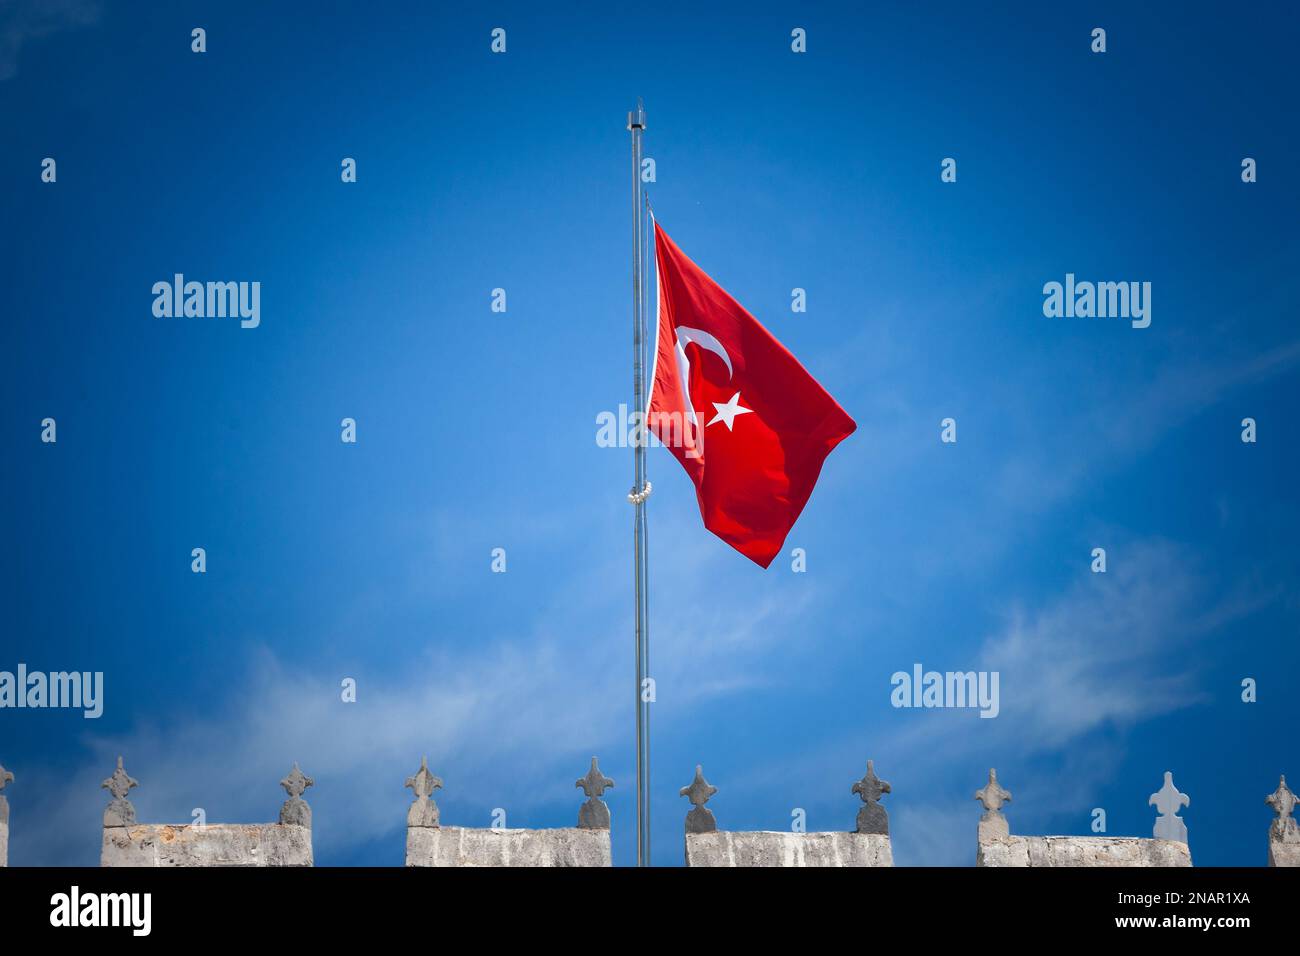 Bild der offiziellen türkischen Flagge, die in einer windigen Umgebung gehisst wird. Die Nationalflagge der Türkei, offiziell die türkische Flagge, ist eine rote Flagge mit Stockfoto